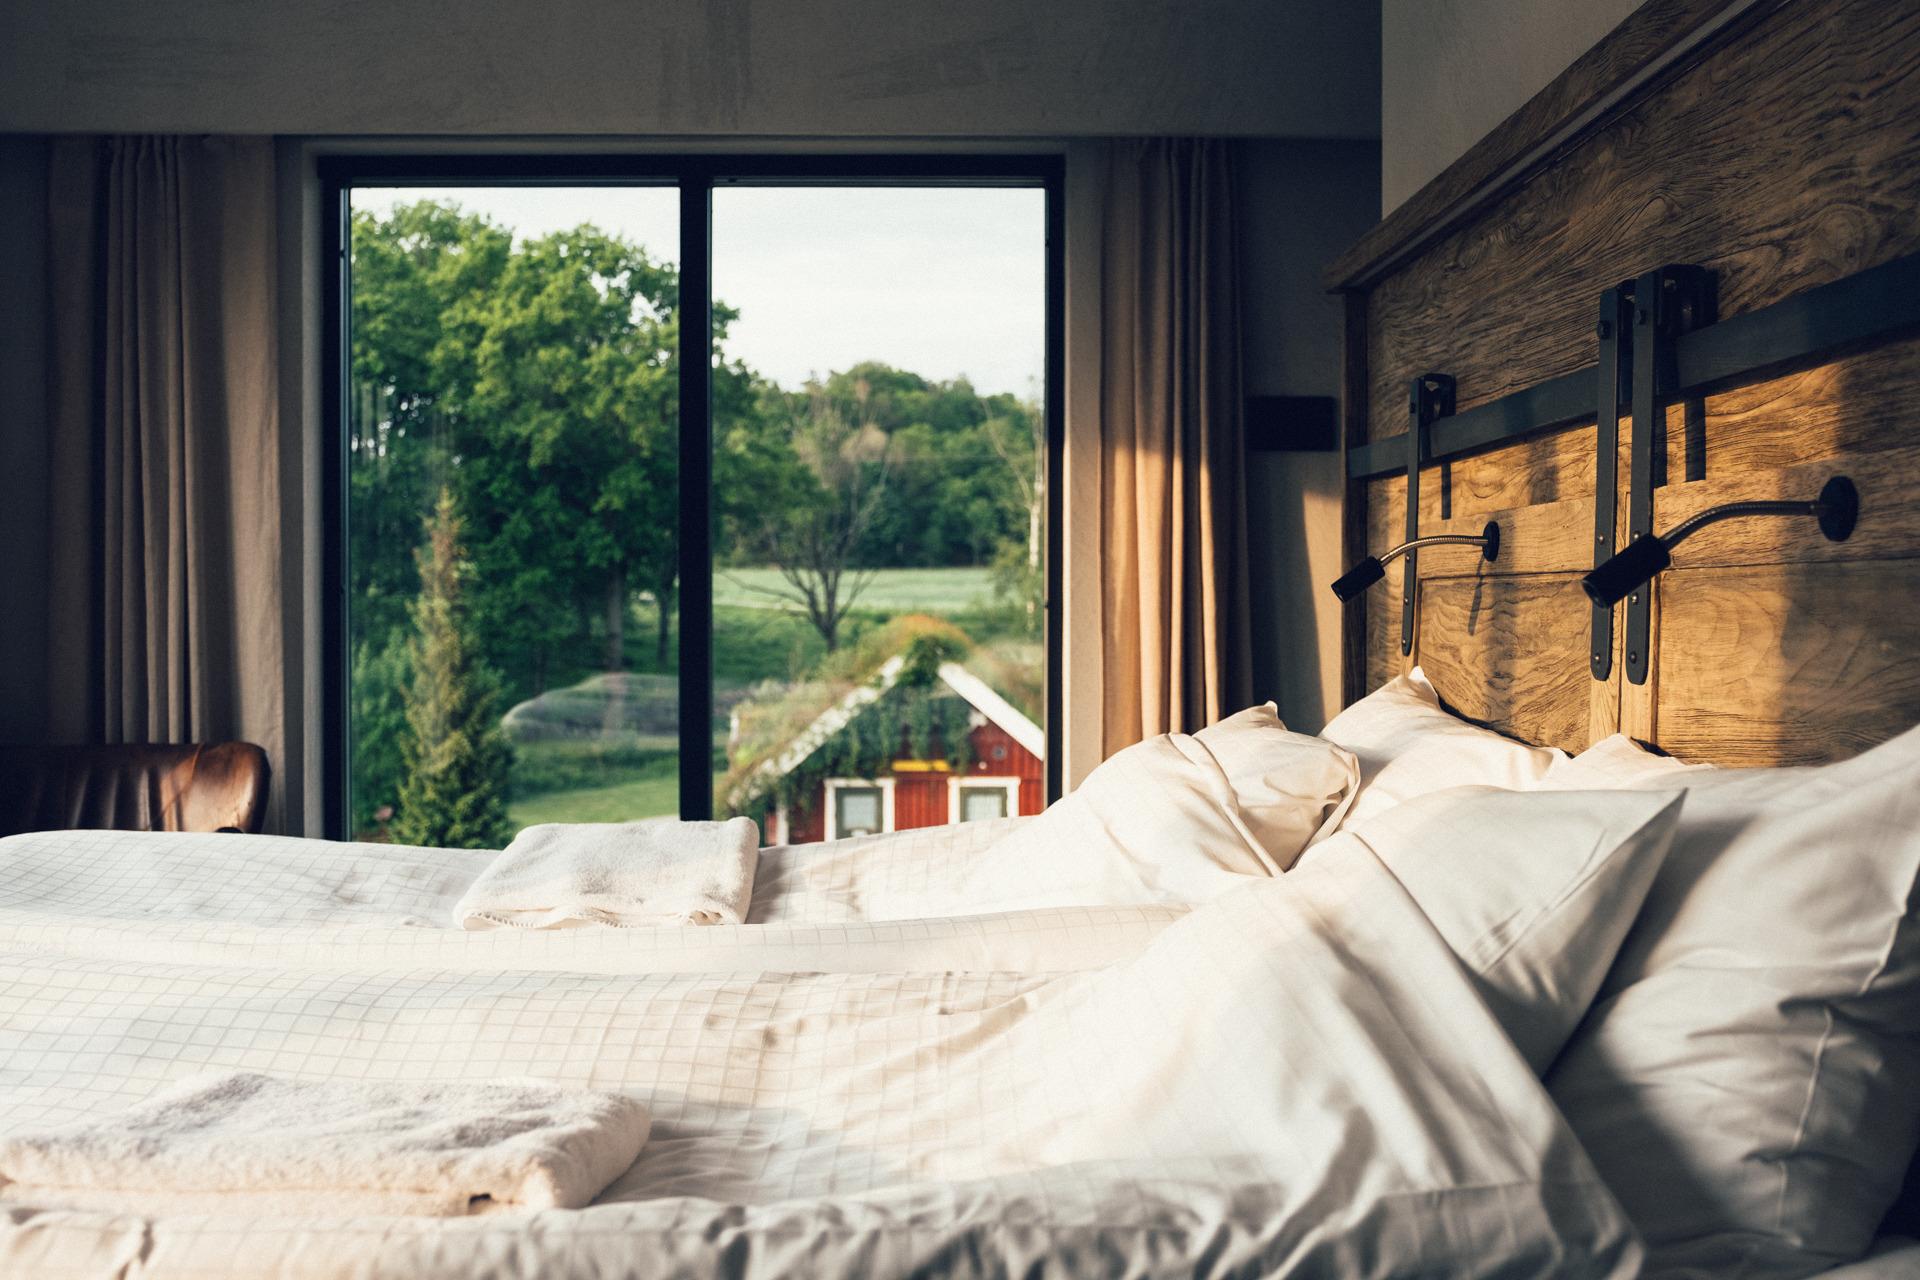 Ein Doppelbett in einem Hotelzimmer mit Fenstern, die den Blick auf eine rote Hütte und einen Wald freigeben.